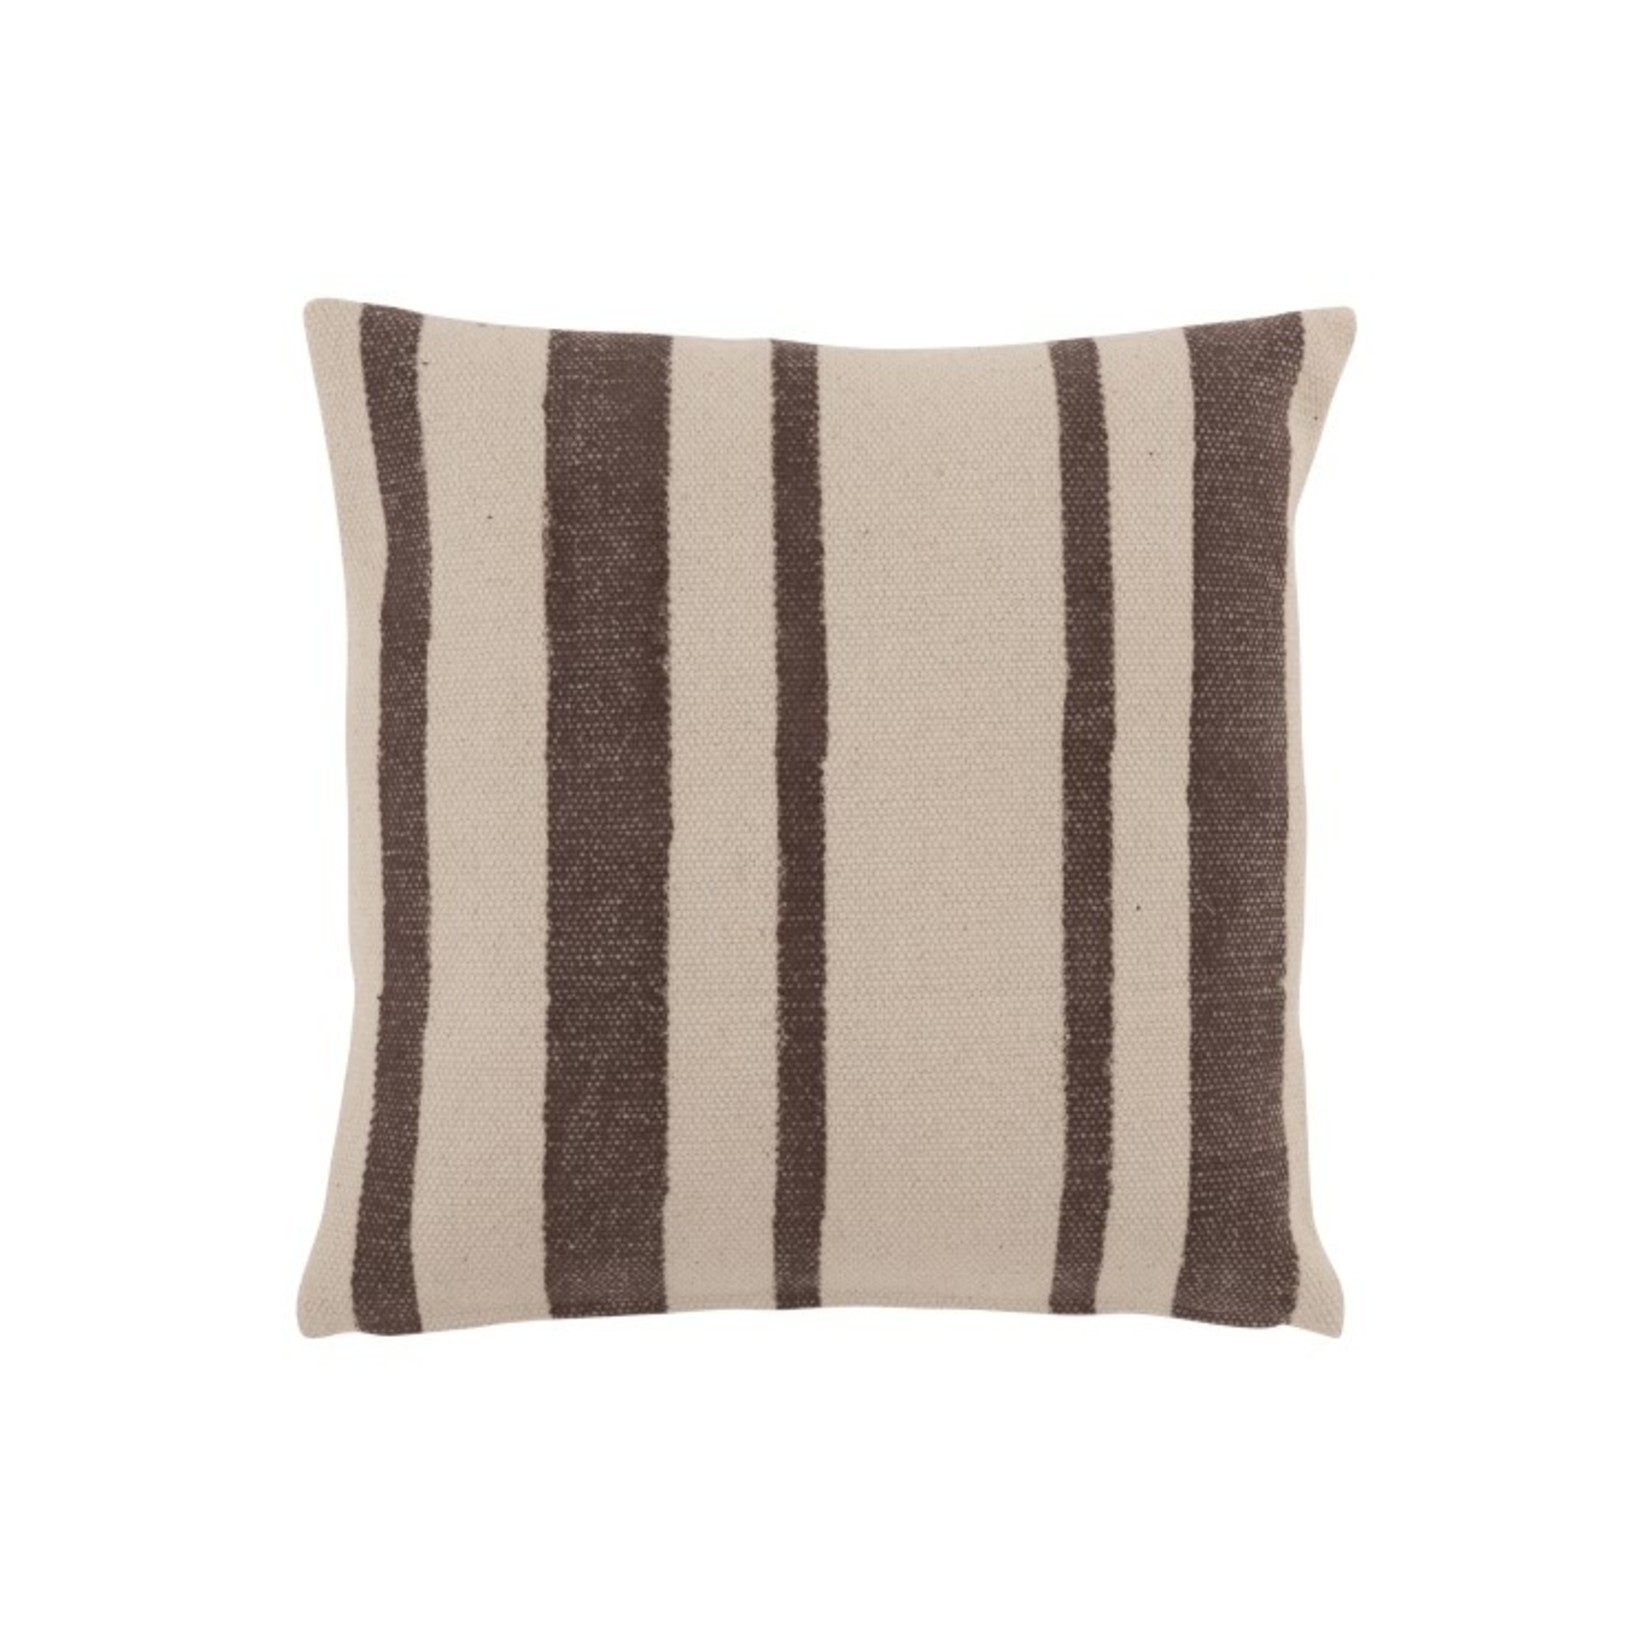 J-Line Cushion Cotton  Stripes Black - Beige